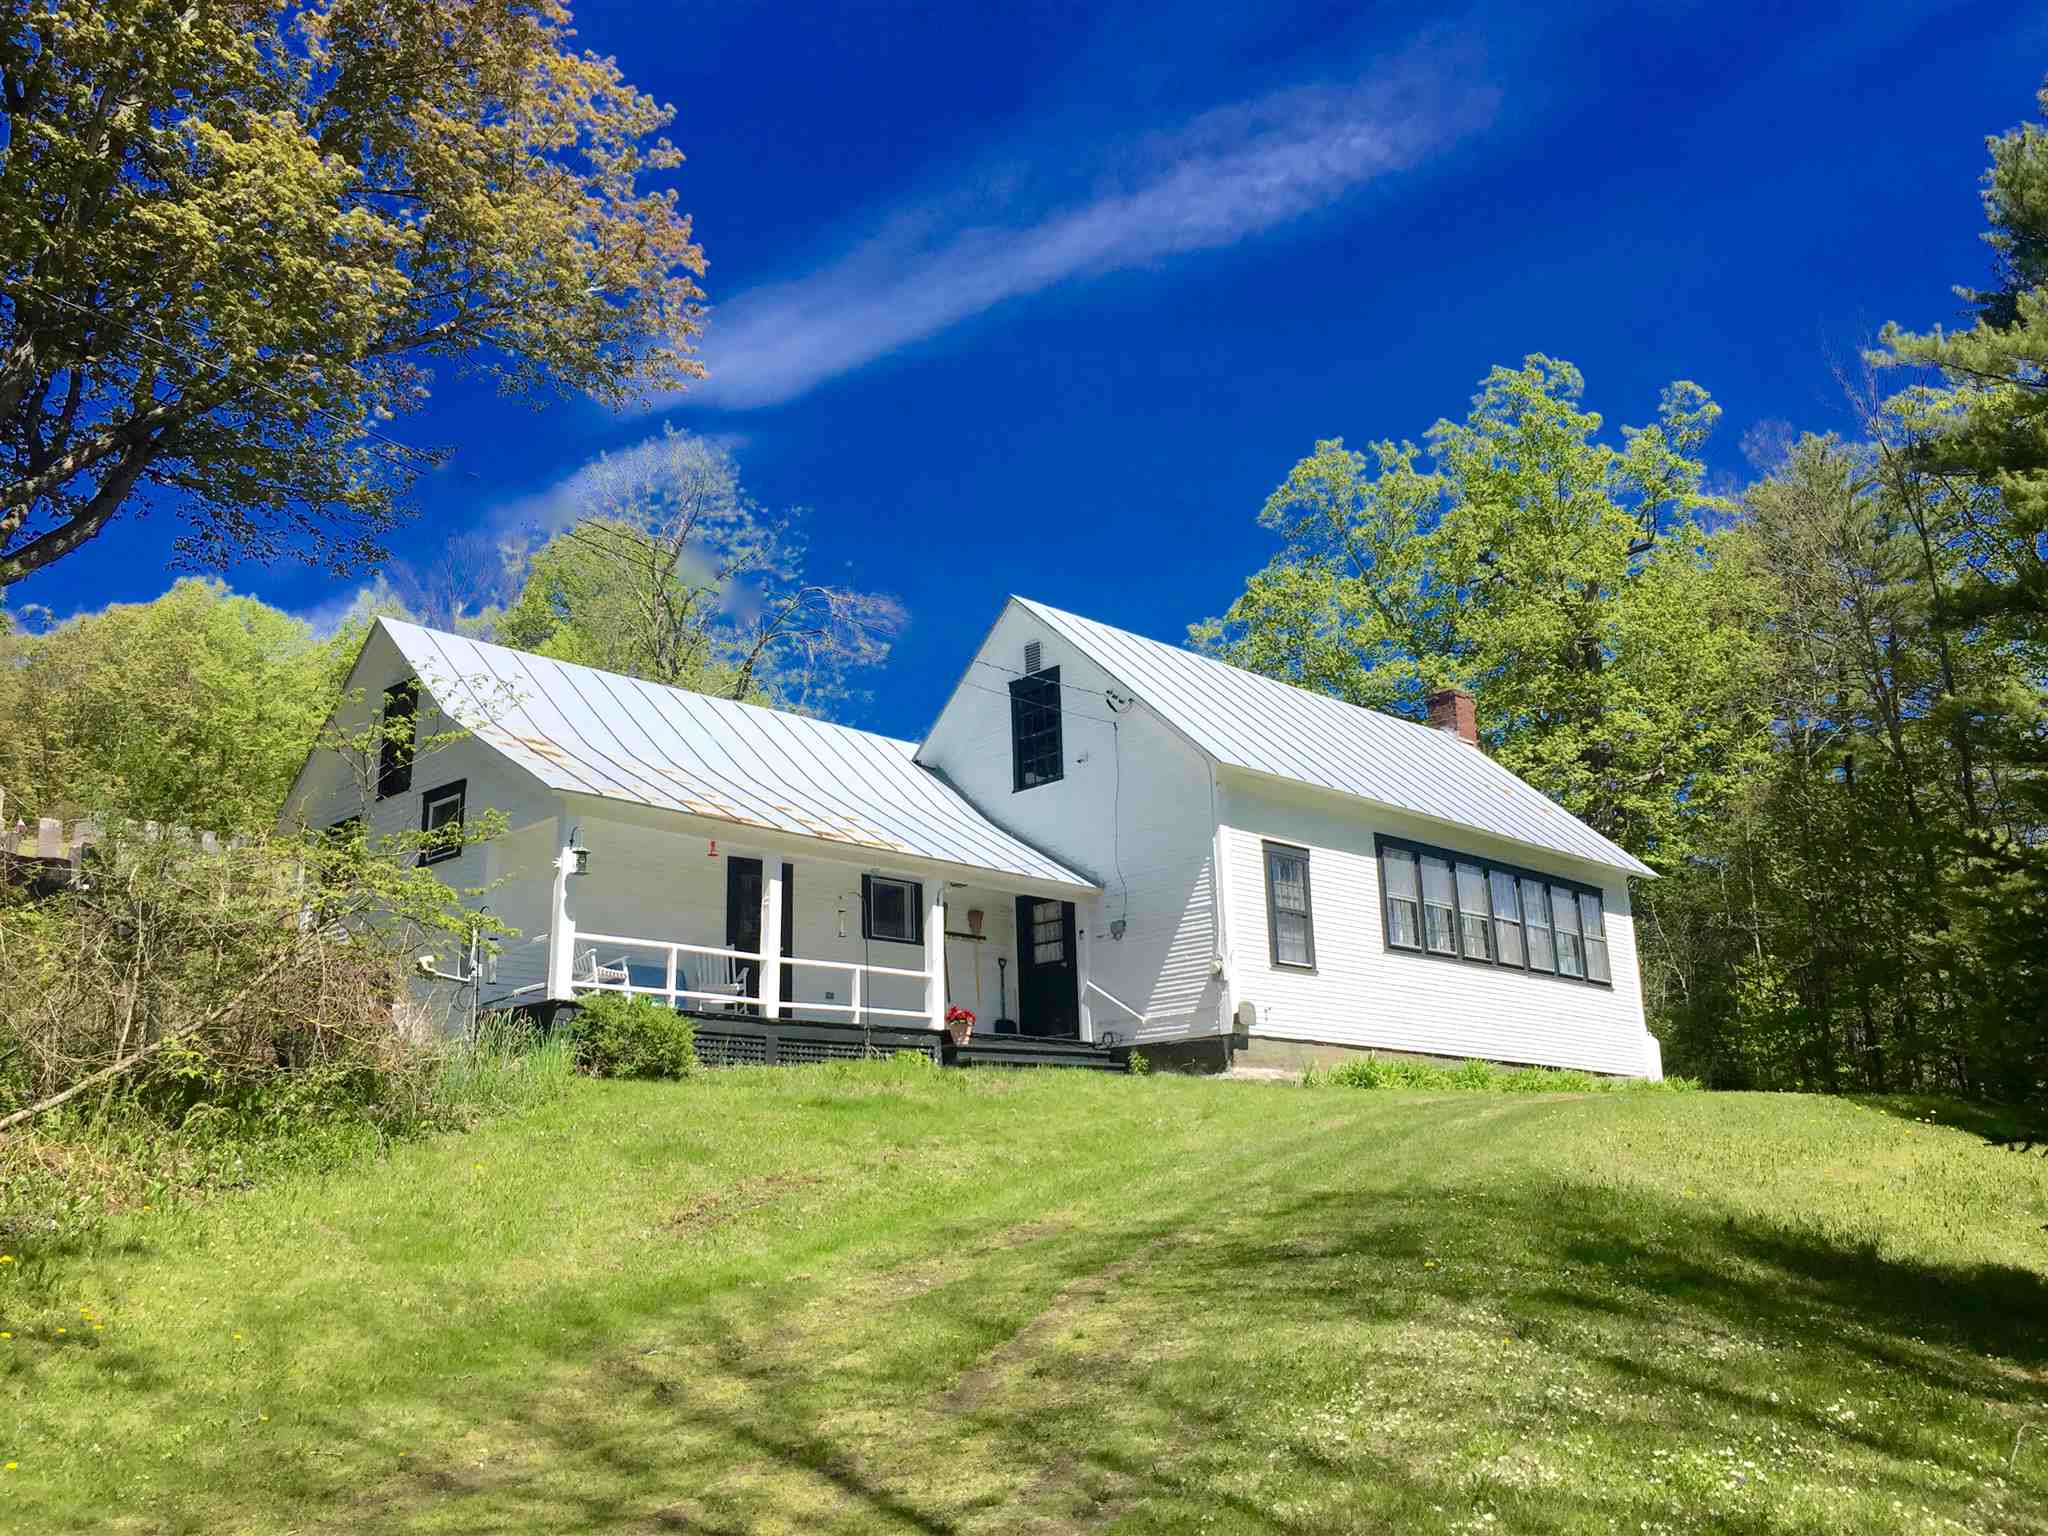 Pomfret Vermont Homes | Seth Warren VT Real Estate page 1